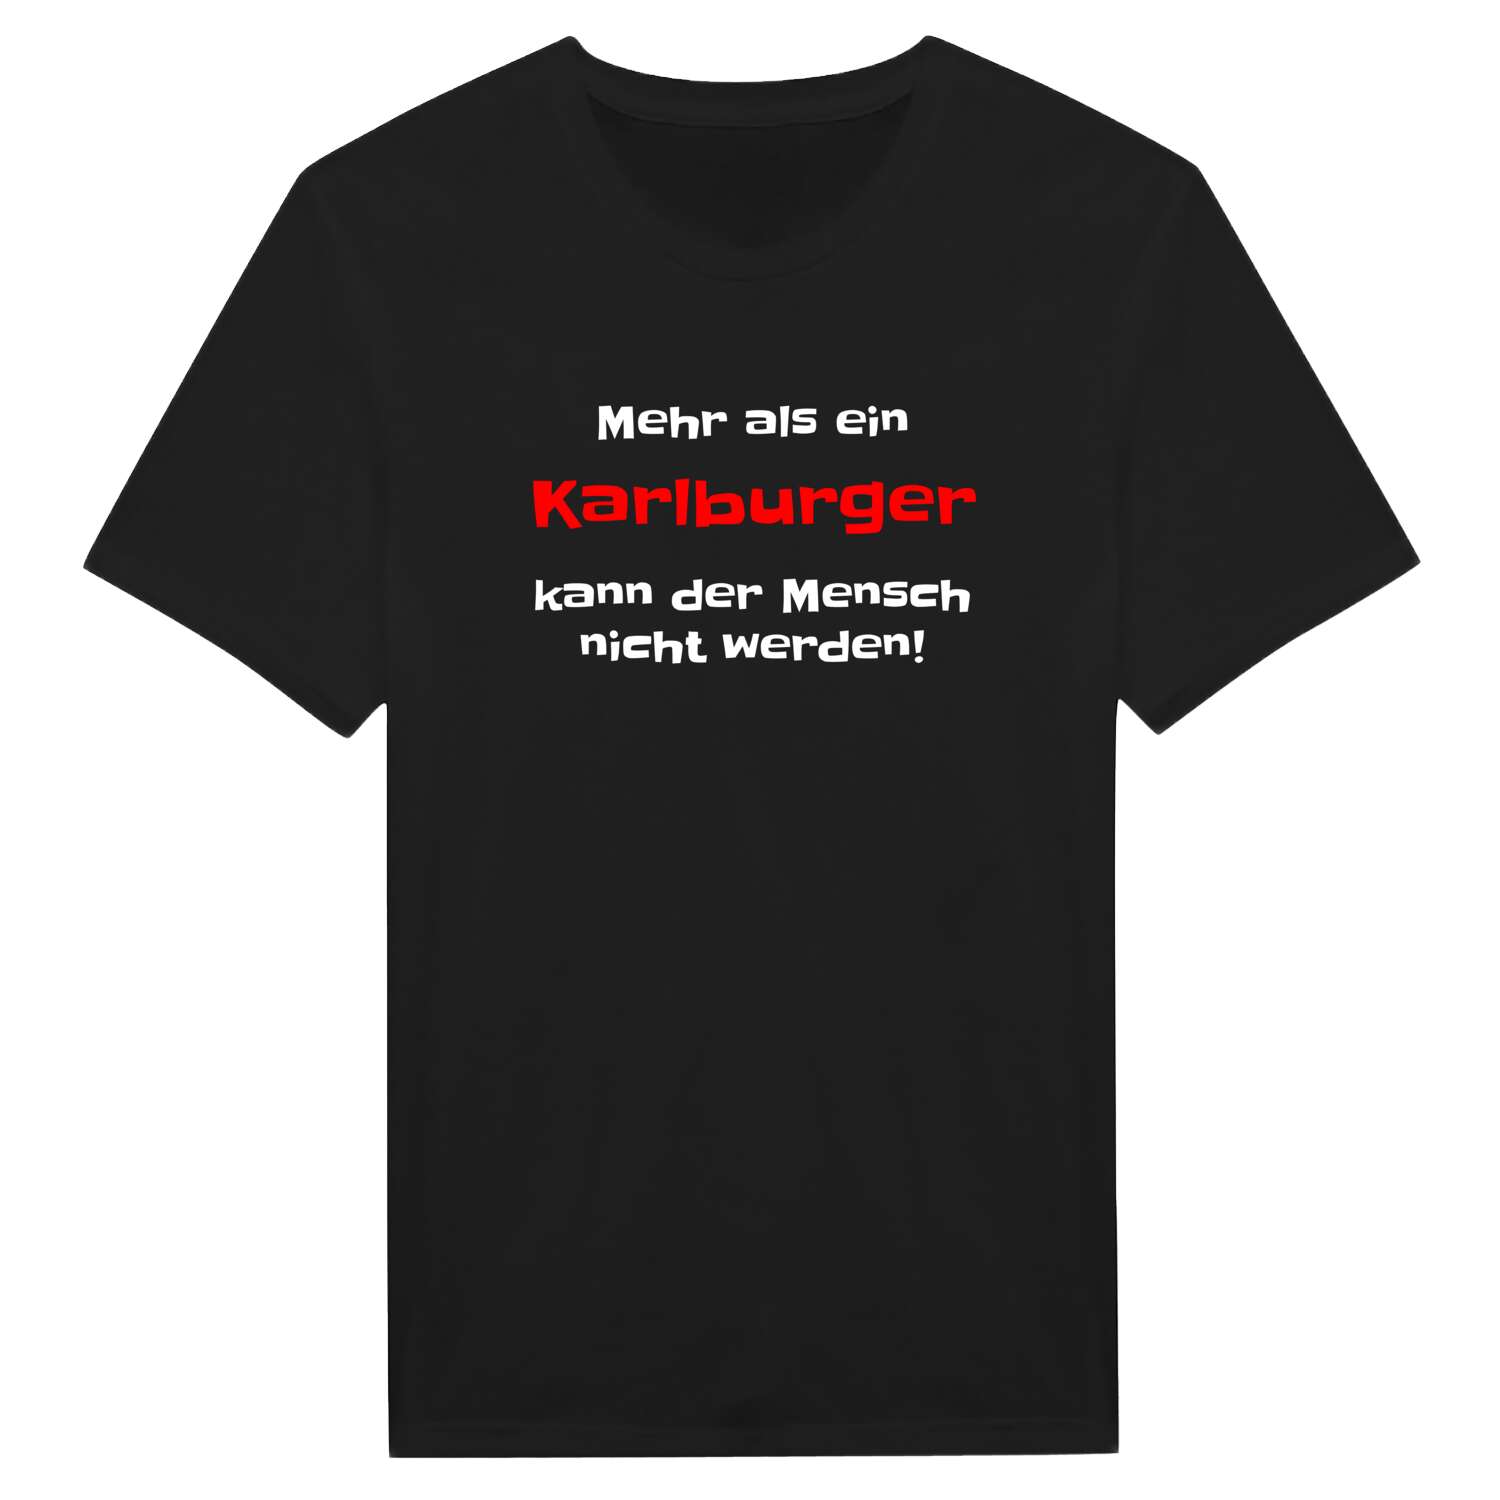 Karlburg T-Shirt »Mehr als ein«